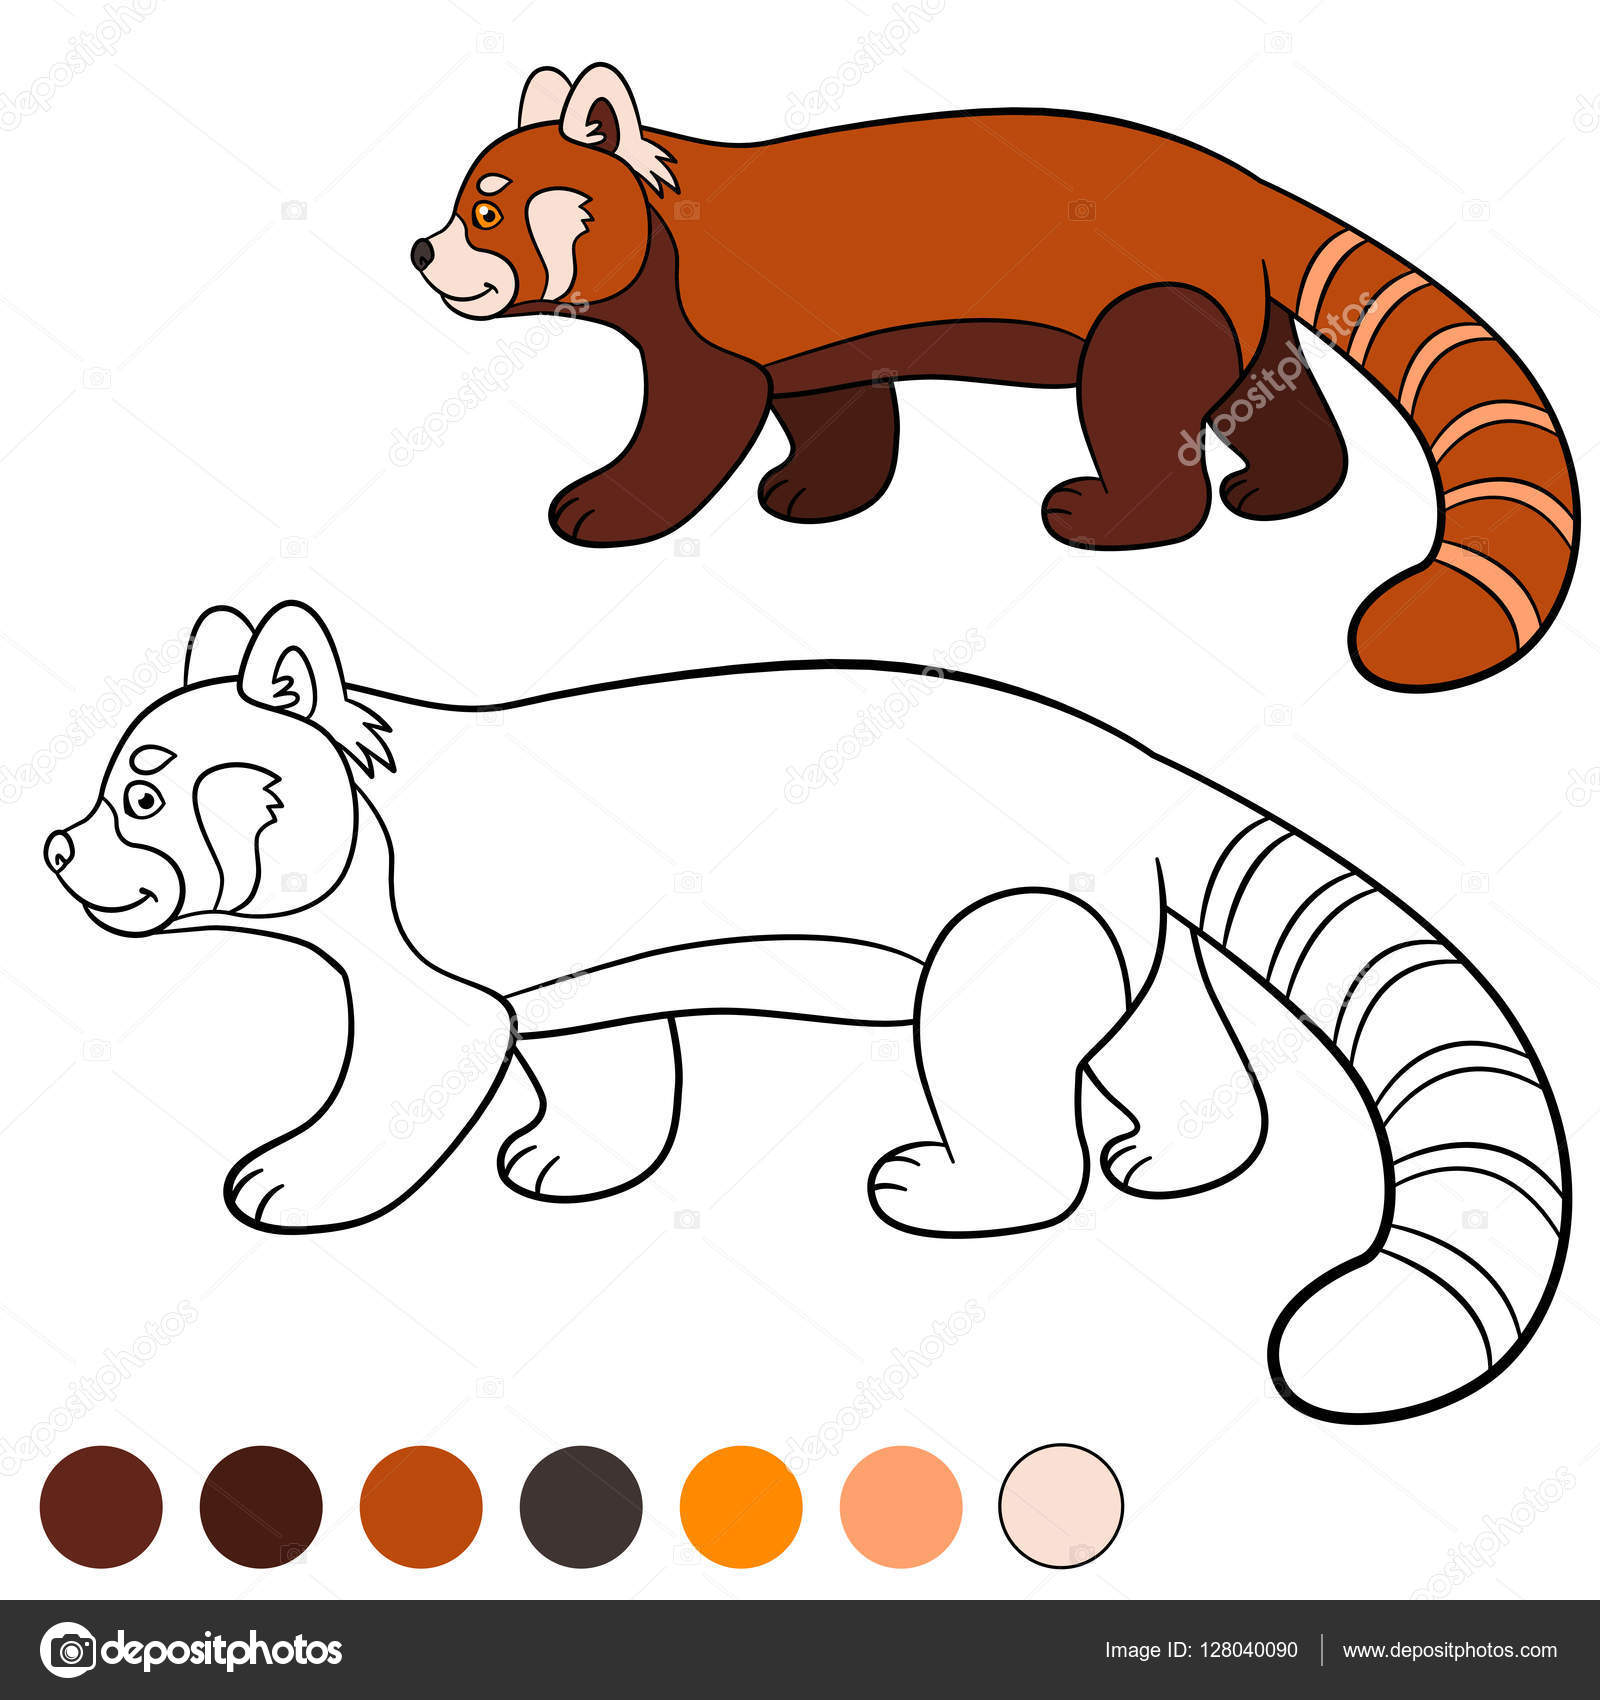 Desenhos de Pandas para Colorir - Colorir.com